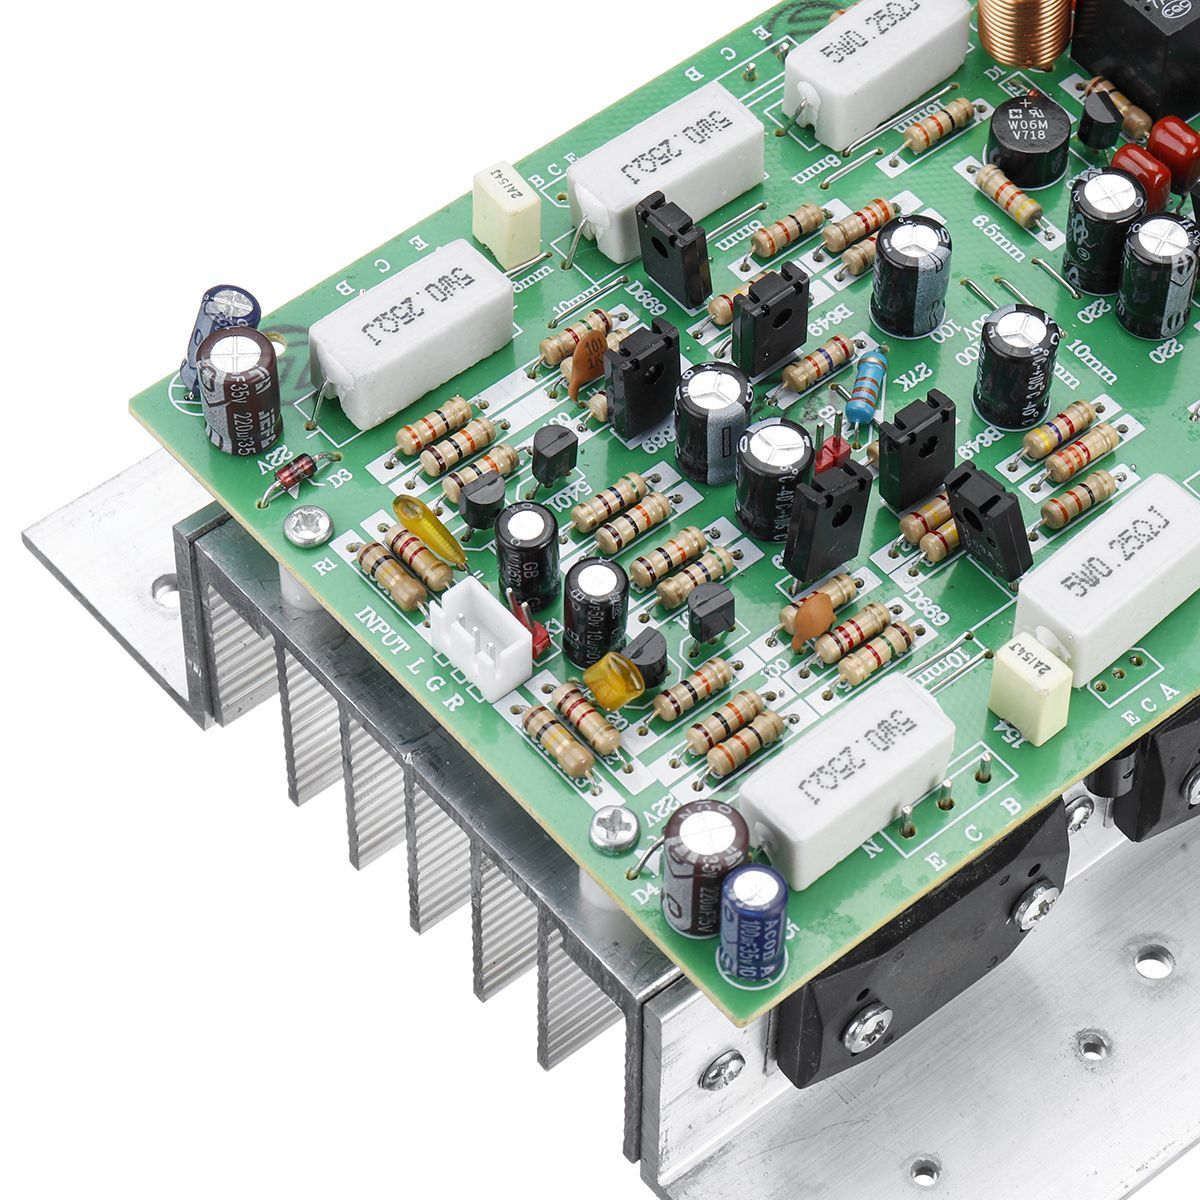 14943858-Two-Channel-Stereo-High-power-Amplifier-Board-450W--450W-1638545